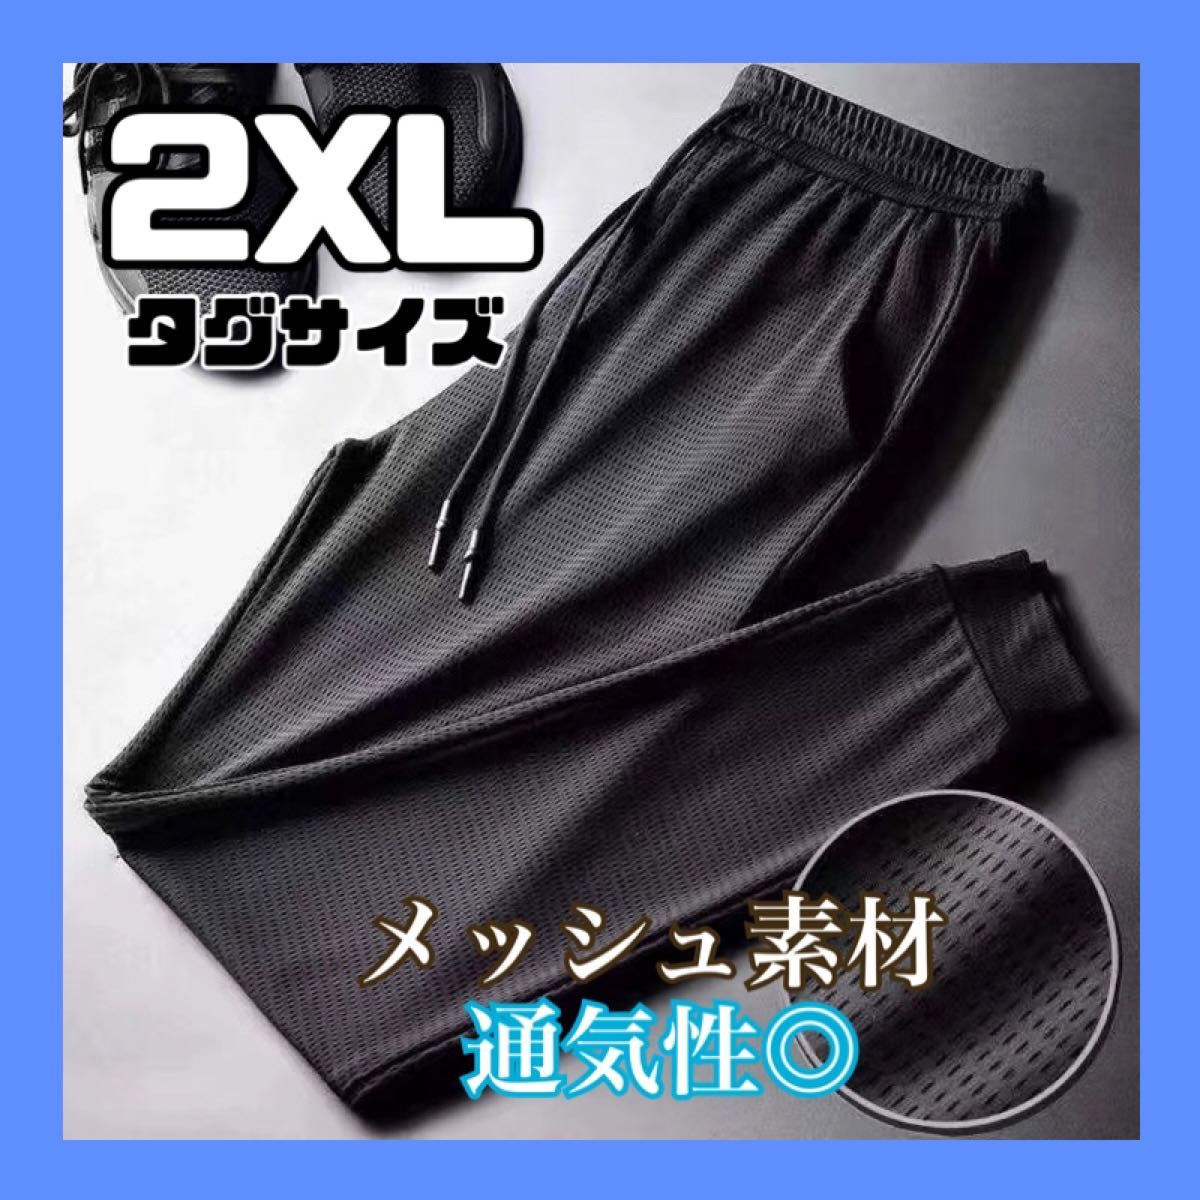 ジョガーパンツ 黒  ブラック 2XL メンズ メッシュ 軽量 通気性抜群